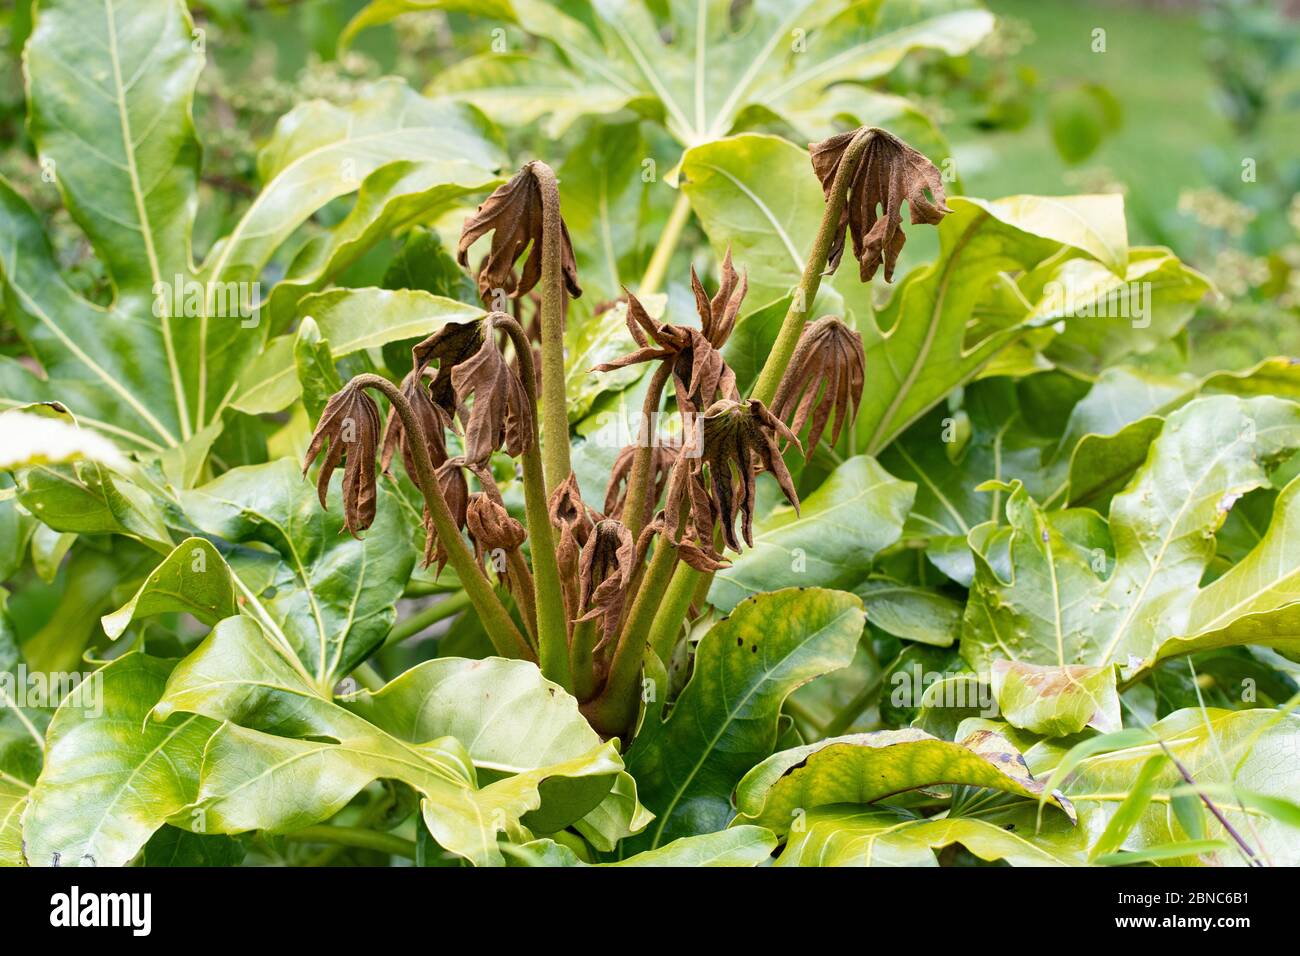 Heladas daño a lo que era verde fresco nuevo crecimiento en la planta de fatsia japonica (aceite de castor falso) - Escocia, Reino Unido Foto de stock